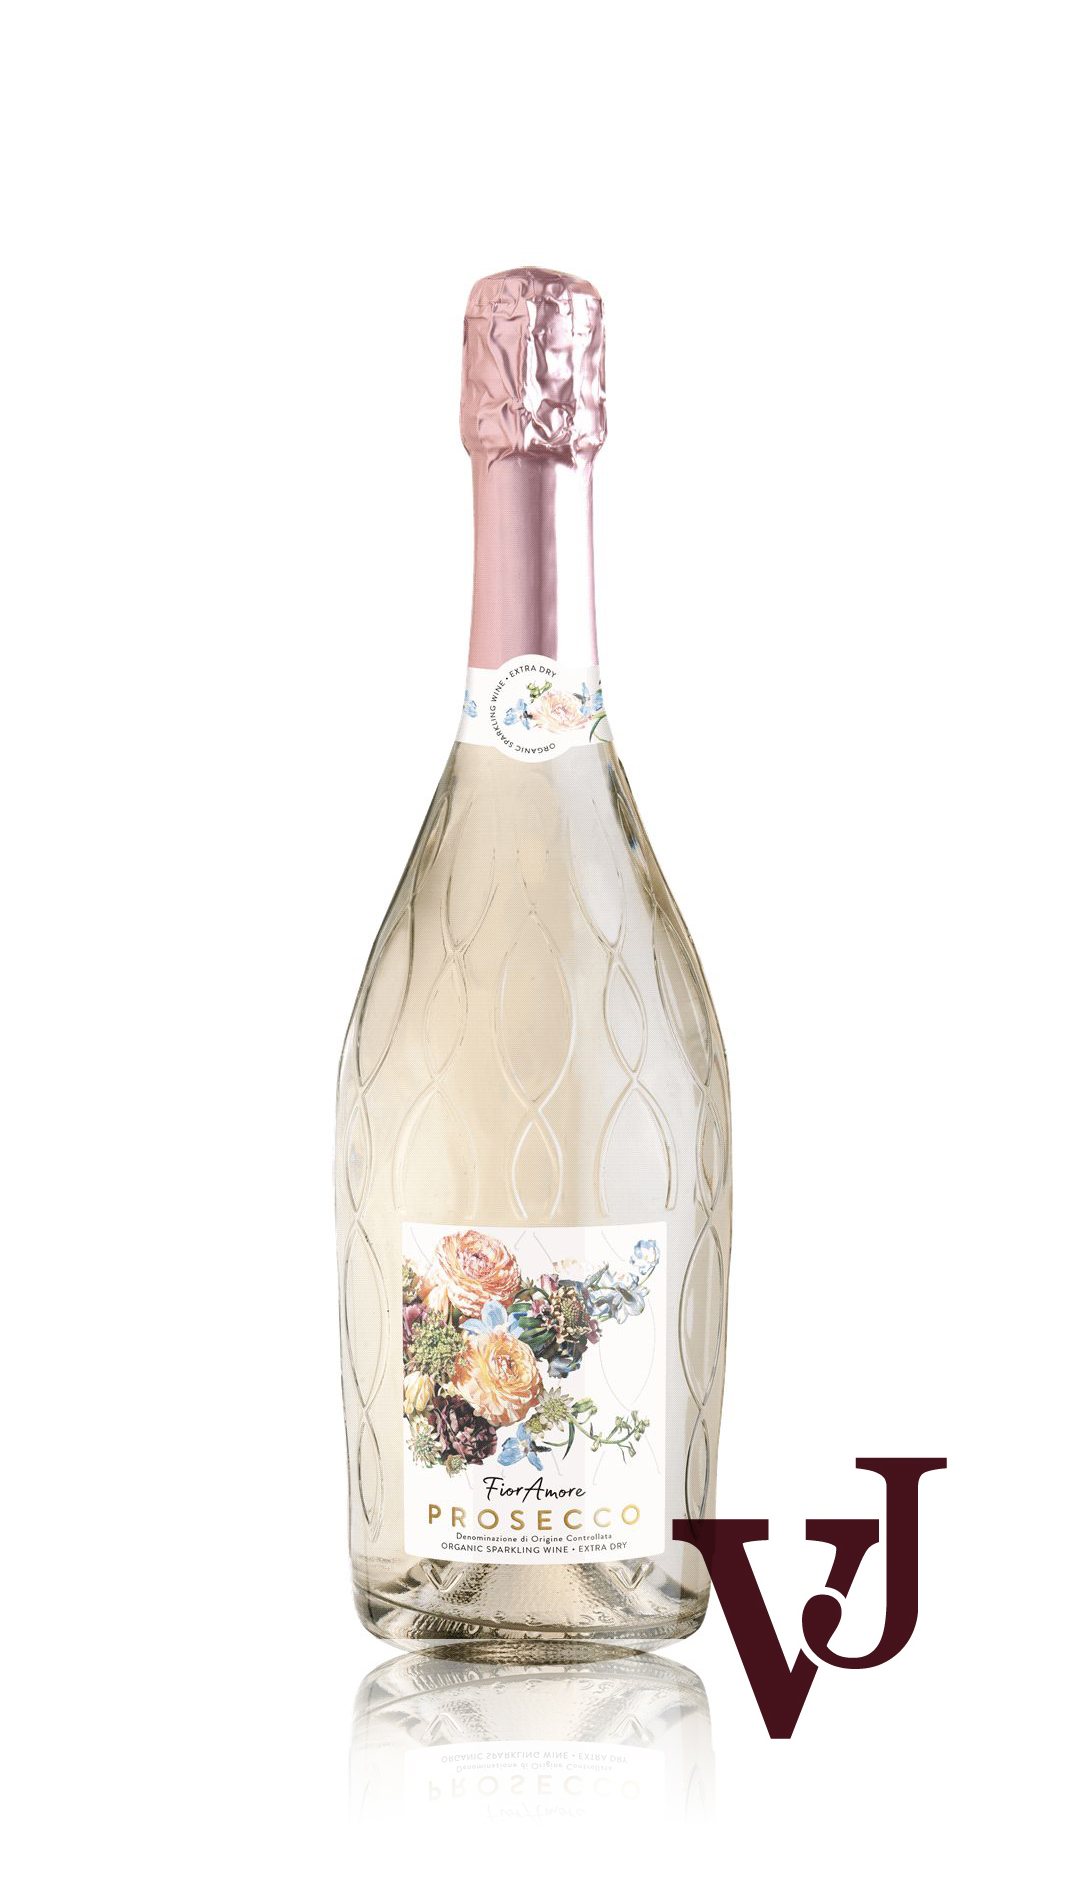 Mousserande Vin - FiorAmore artikel nummer 5940401 från producenten Enoitalia från området Italien